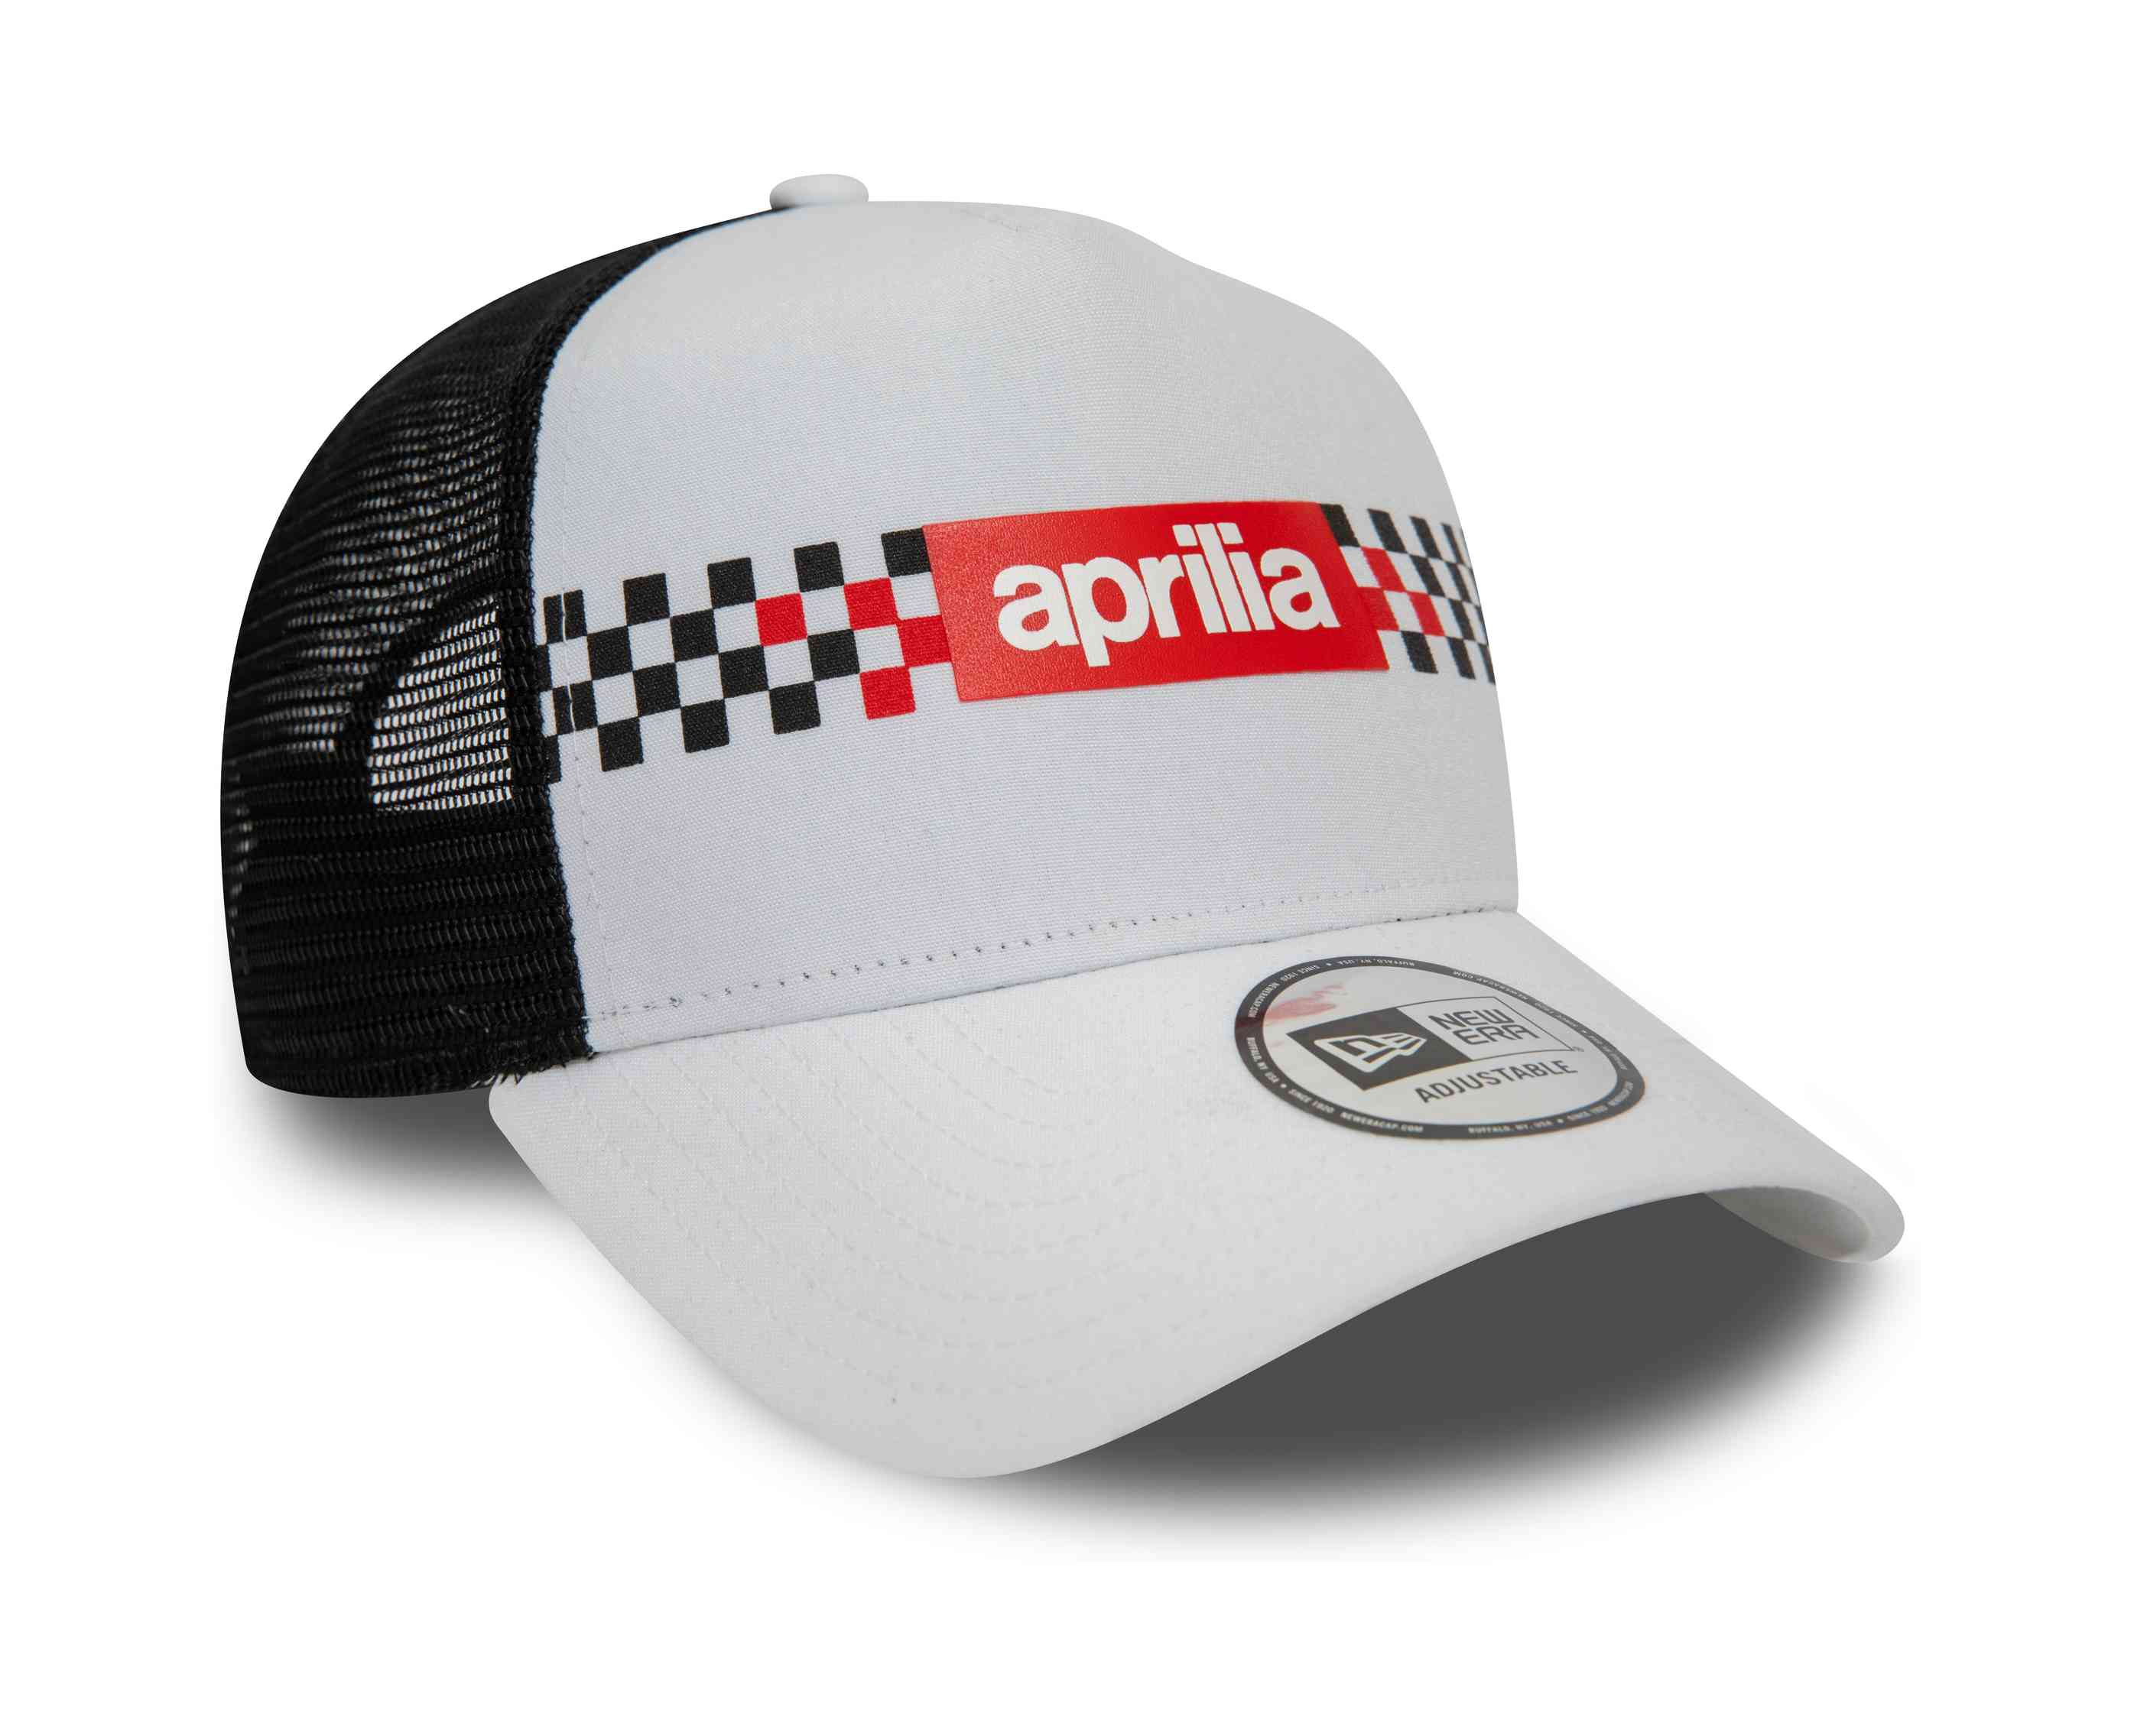 New Era - Aprilia Checker Print Trucker Snapback Cap